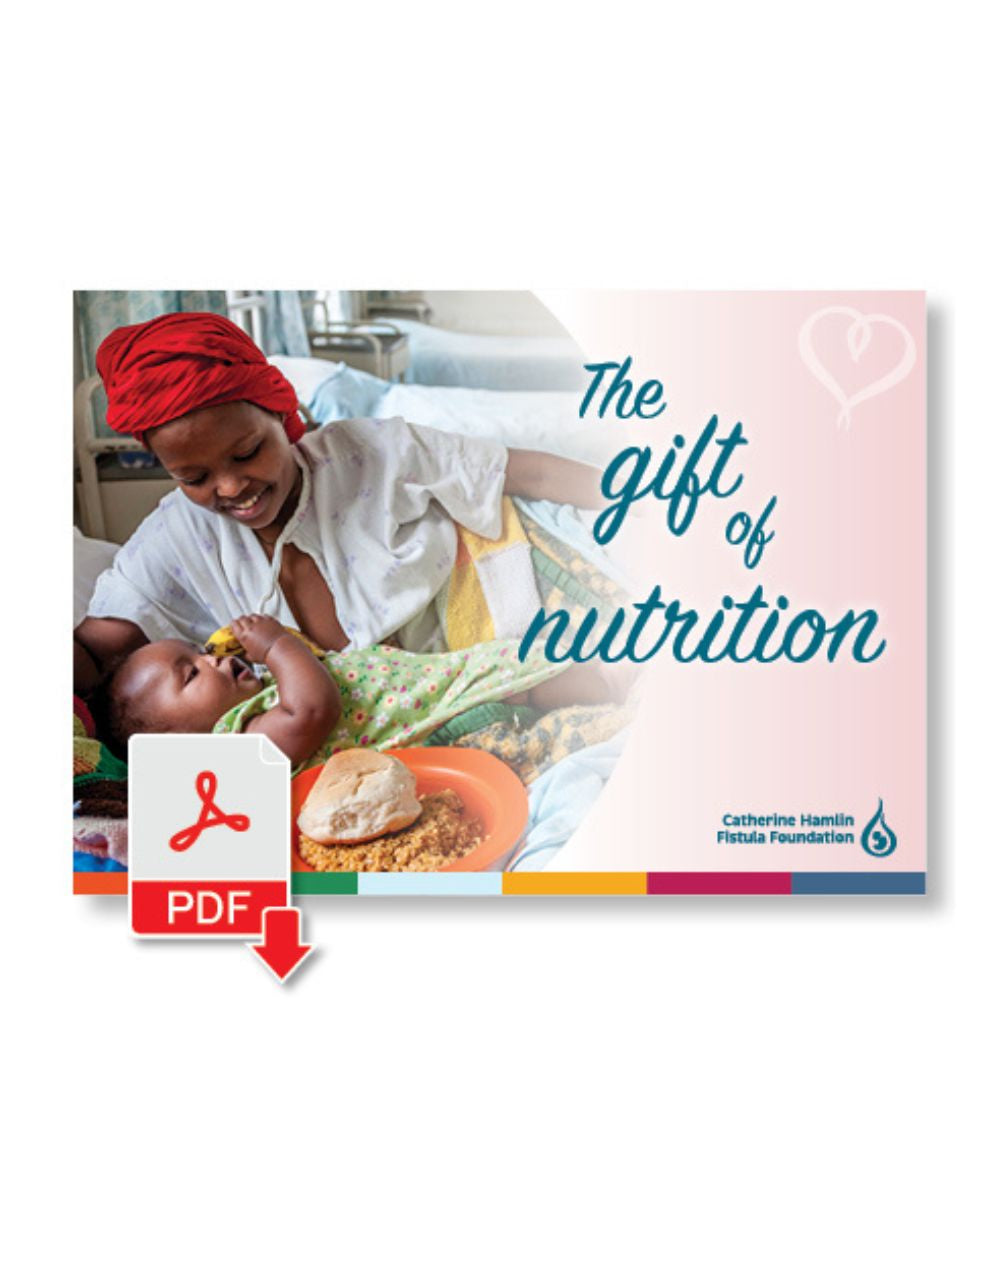 Nutrition - Printable Card